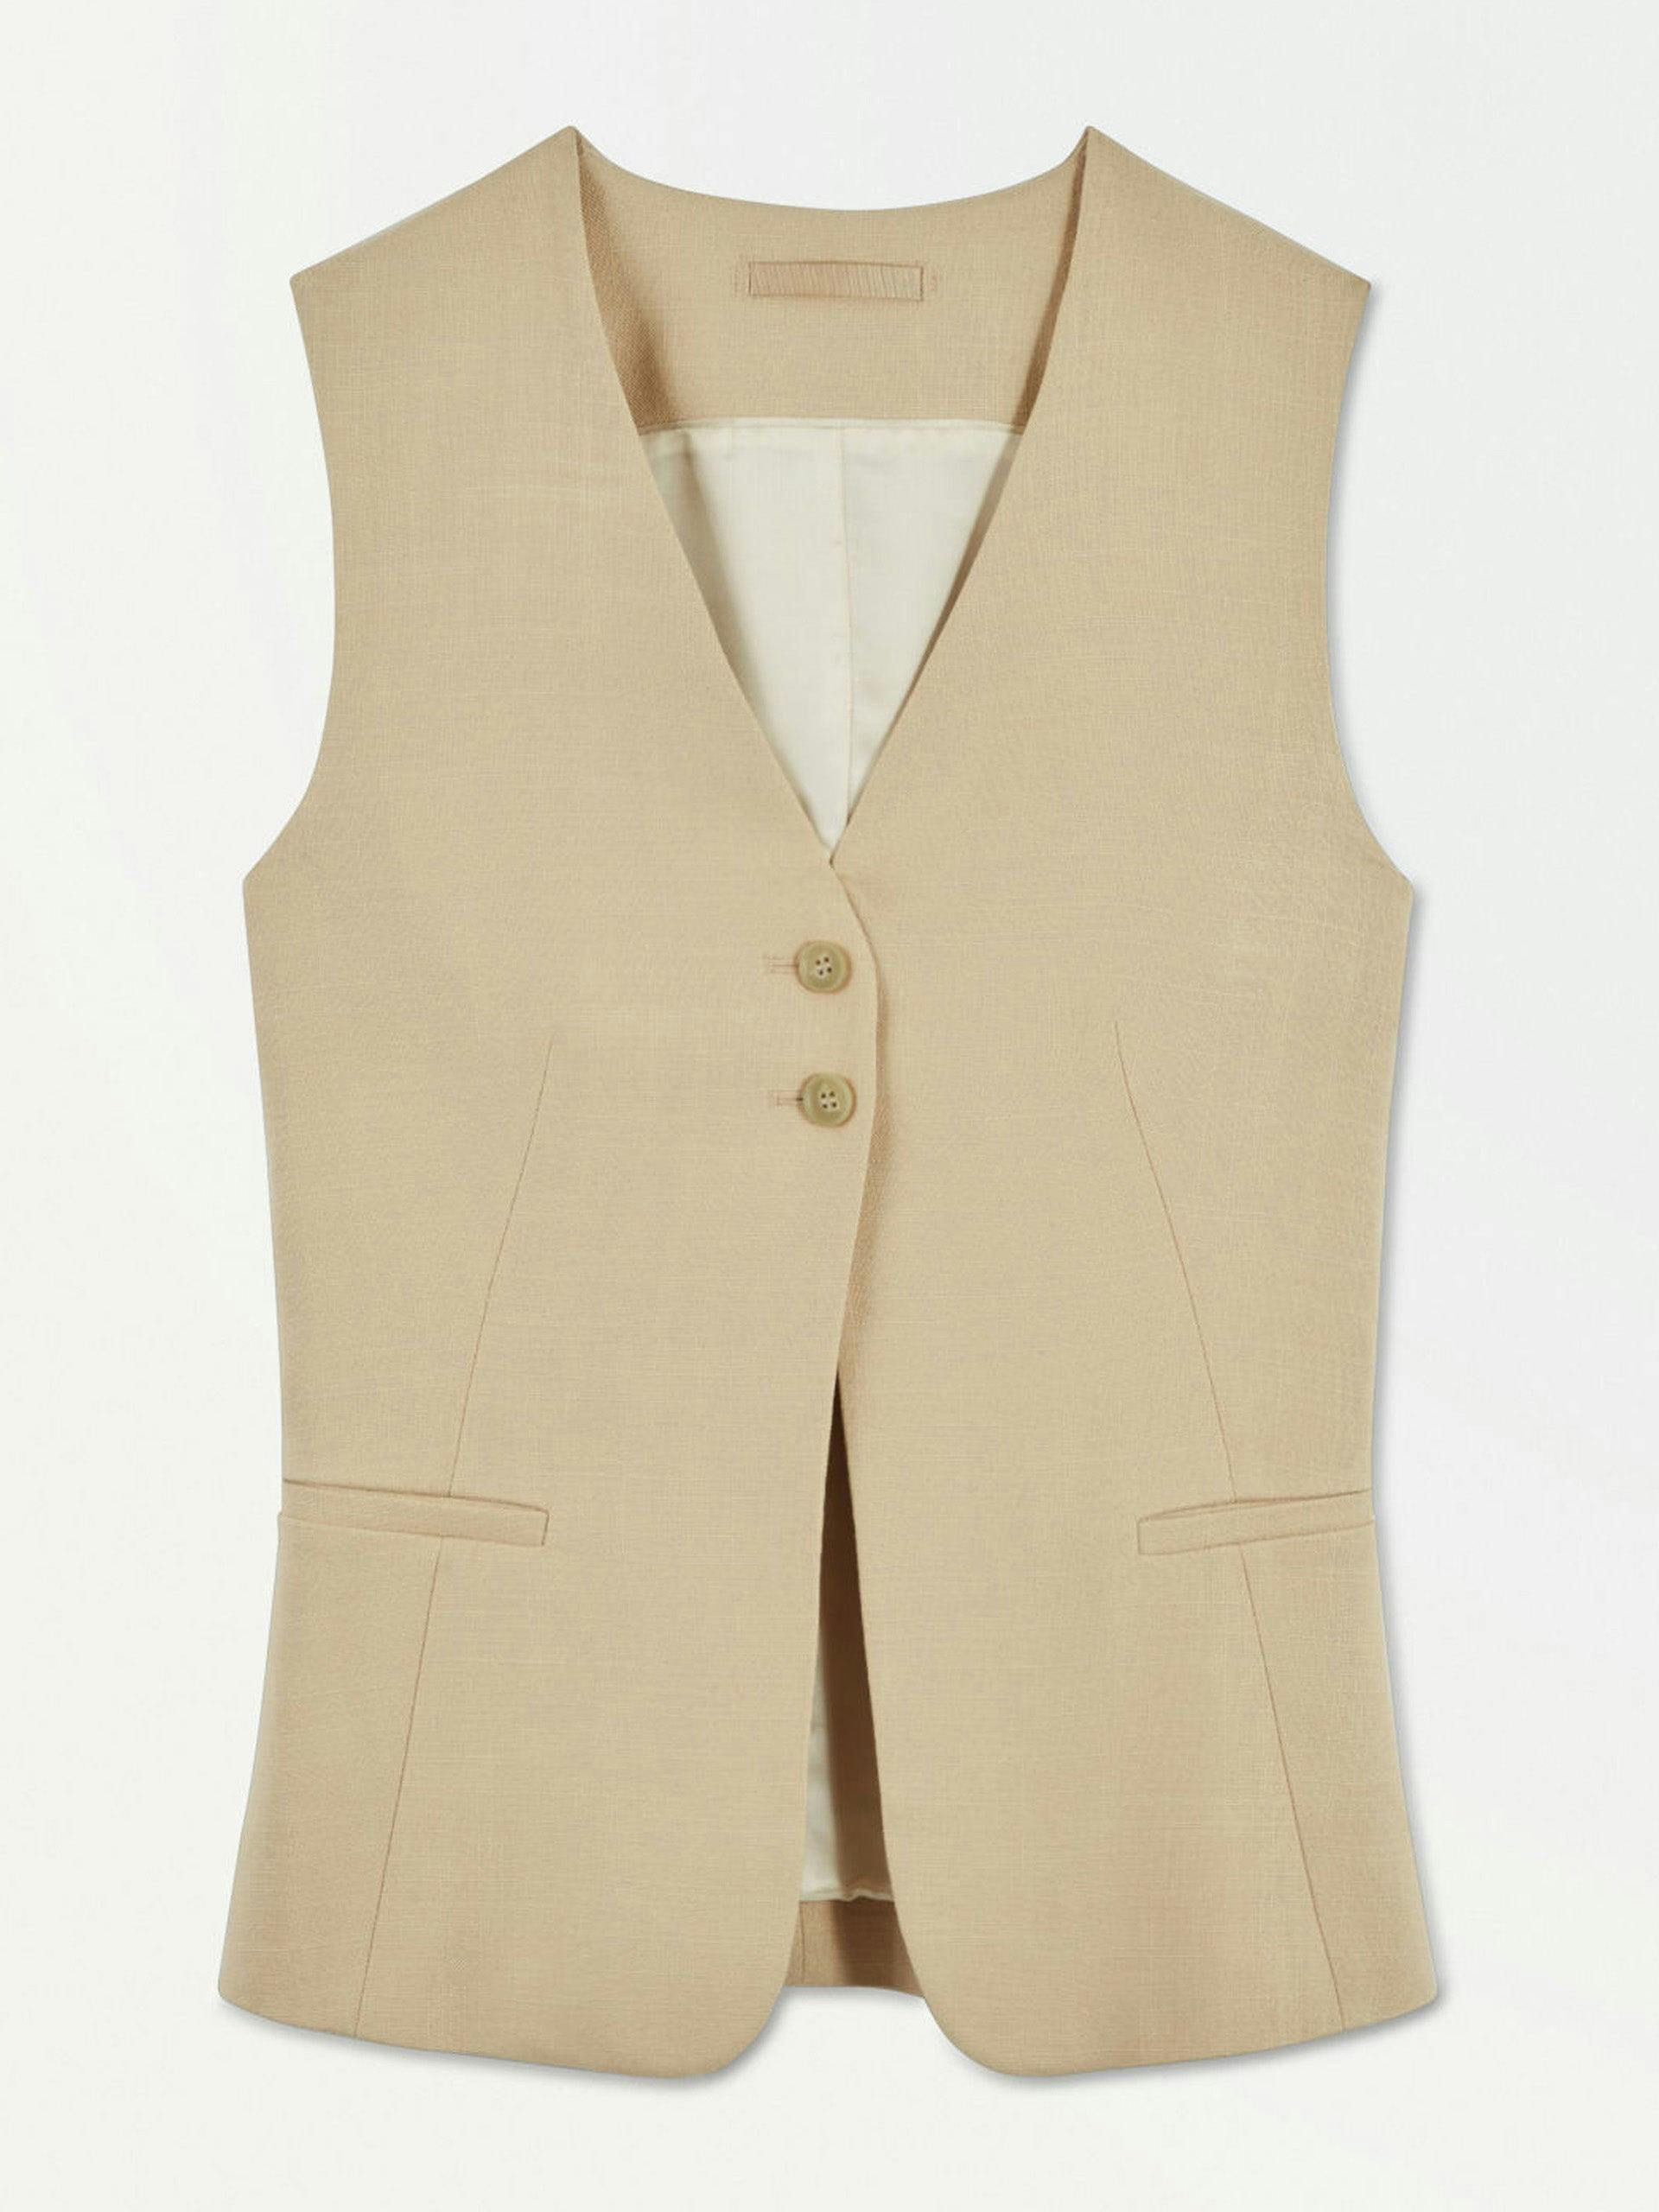 Longline waistcoat in beige